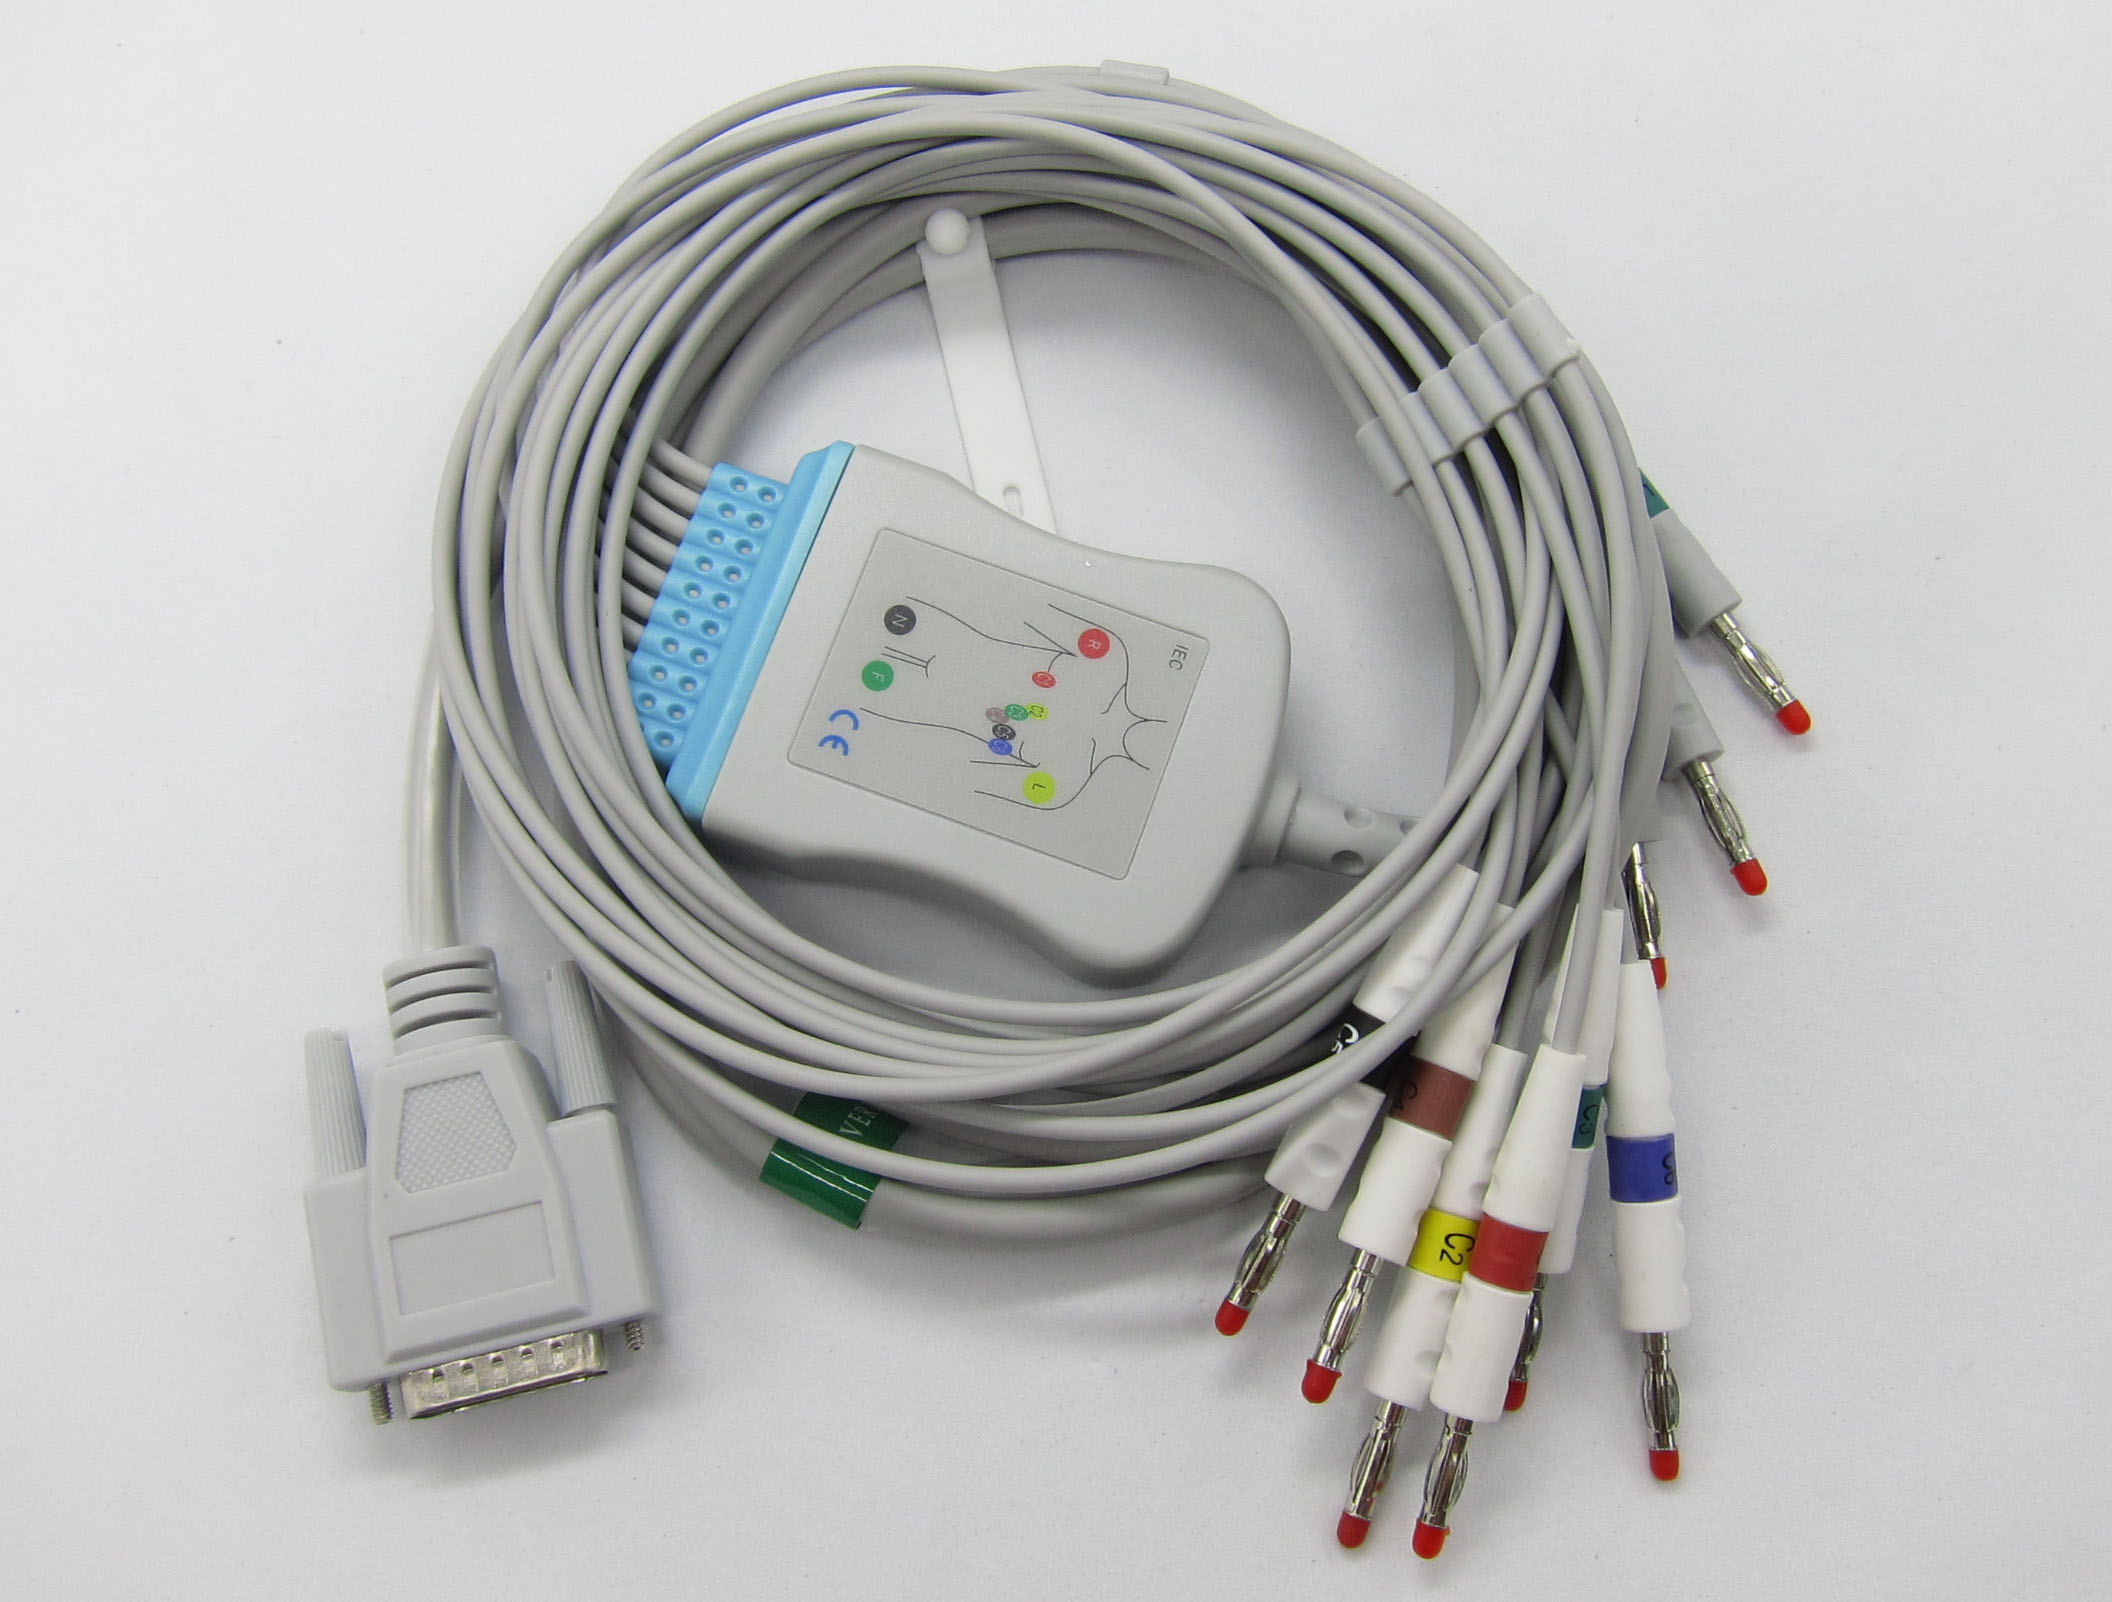 ЭКГ кабель пациента для Nihon Kohden (OEM BJ-902D) Cardiofax с защитой от импульса дефибриллятора, резисторы 10кОм, штекер banana 4мм